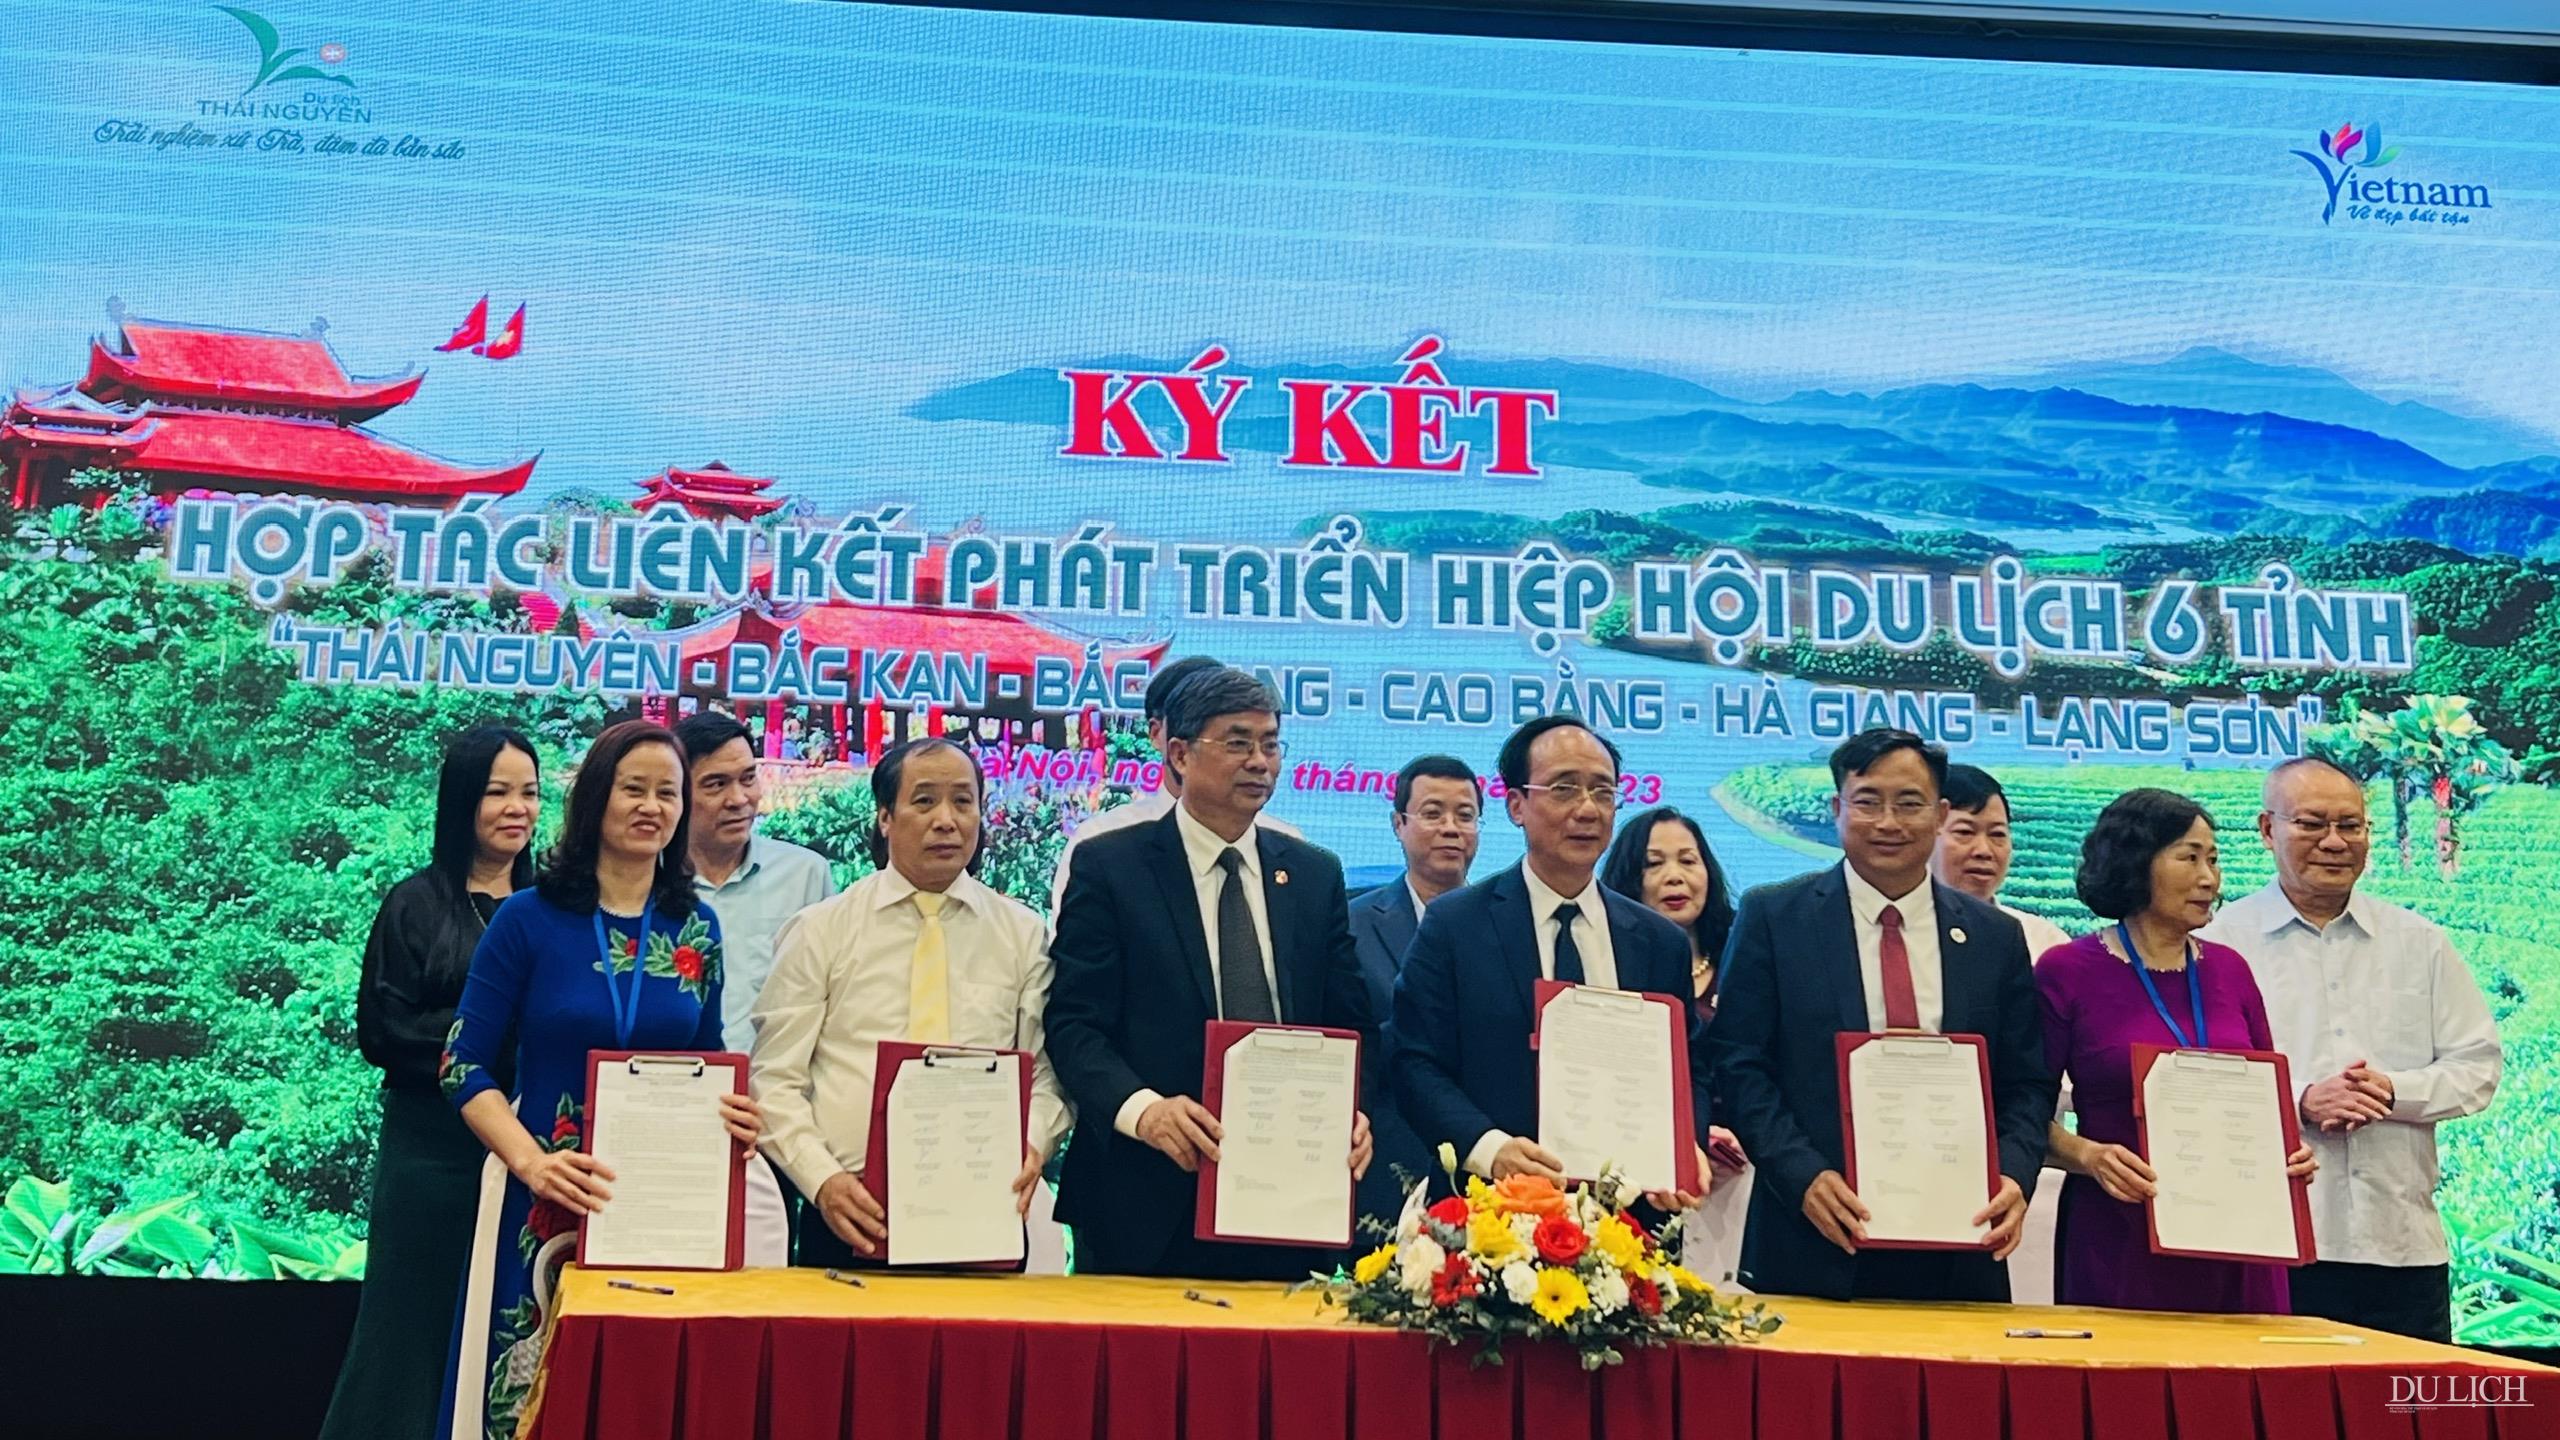 Lễ ký kết hợp tác phát triển giữa Hiệp hội Du lịch 6 tỉnh vùng trung du miền núi phía Bắc, gồm: Thái Nguyên - Bắc Kạn - Cao Bằng - Hà Giang - Lạng Sơn - Bắc Giang.